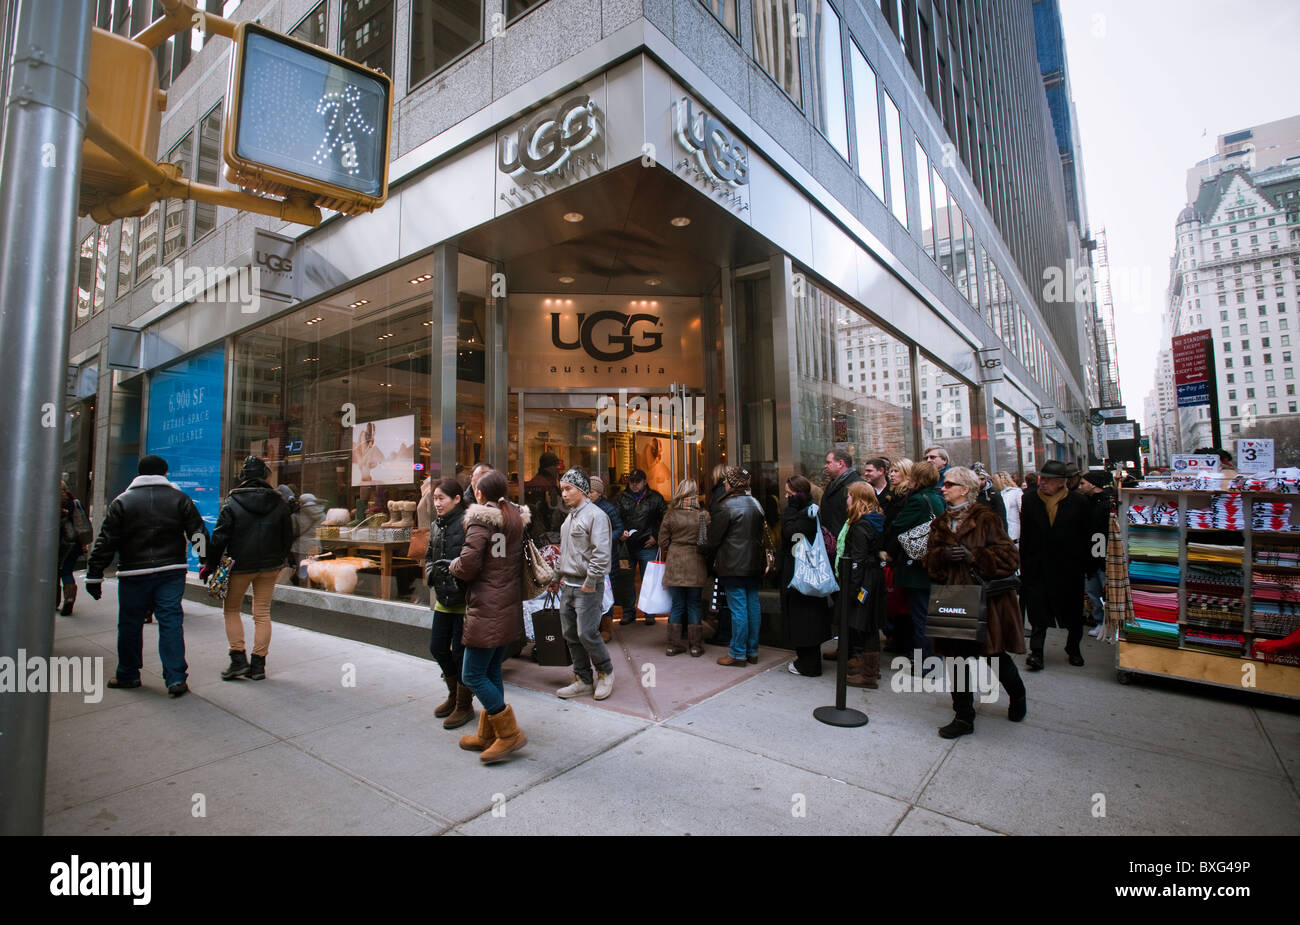 new york city ugg store